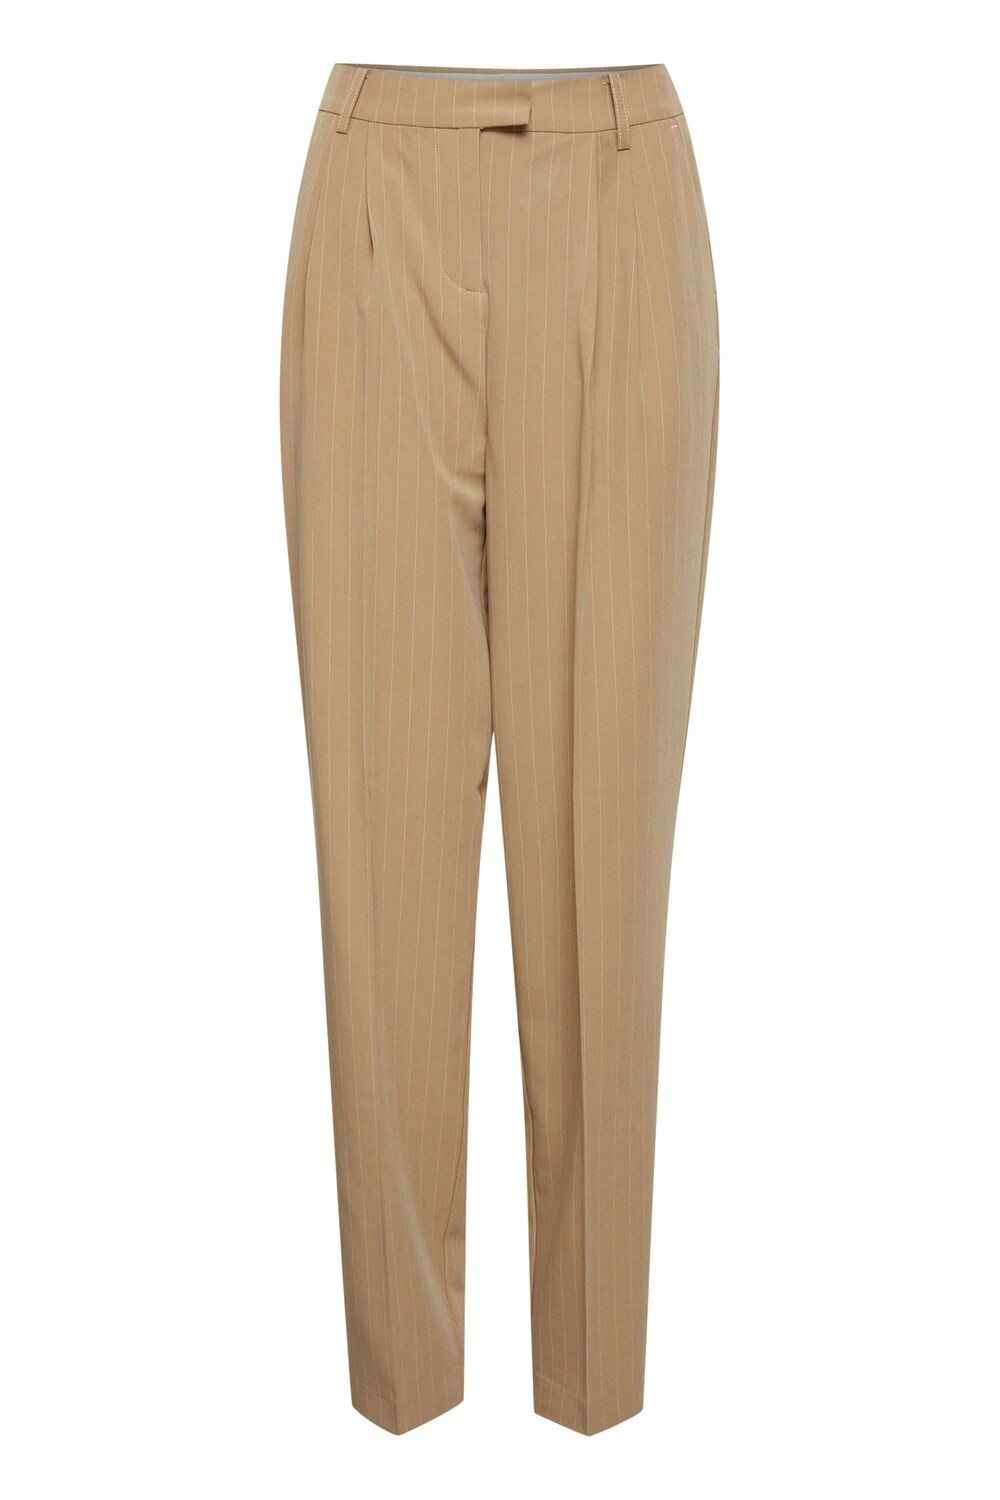 Обычные брюки со складками спереди Fransa Callie Pa 1, светло-коричневый узкие брюки со складками спереди fransa curve stretch коричневый